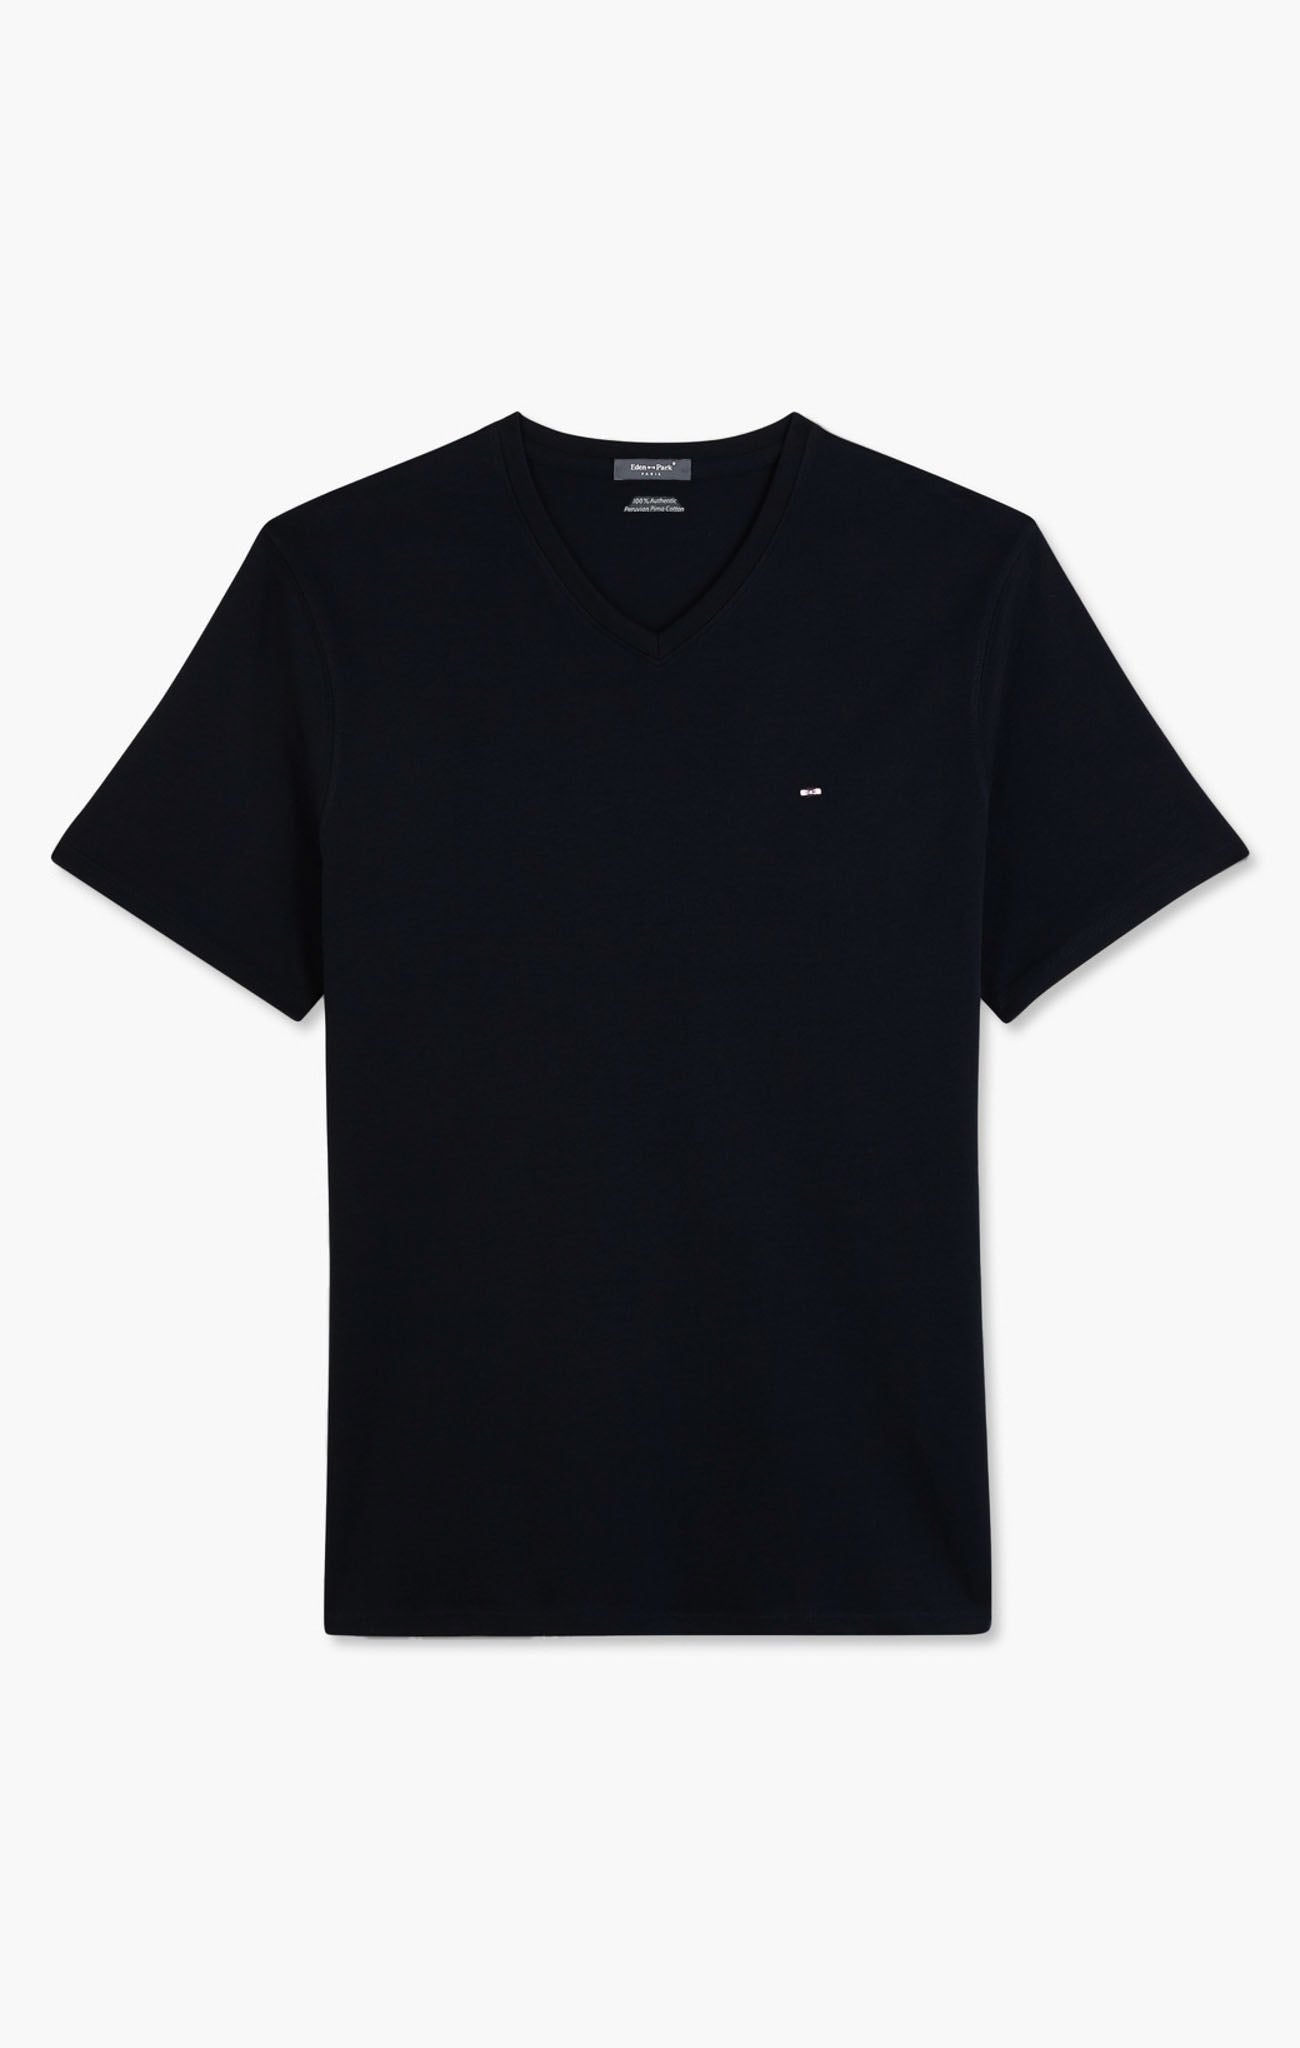 V-neck black light pima cotton t-shirt - Image 2